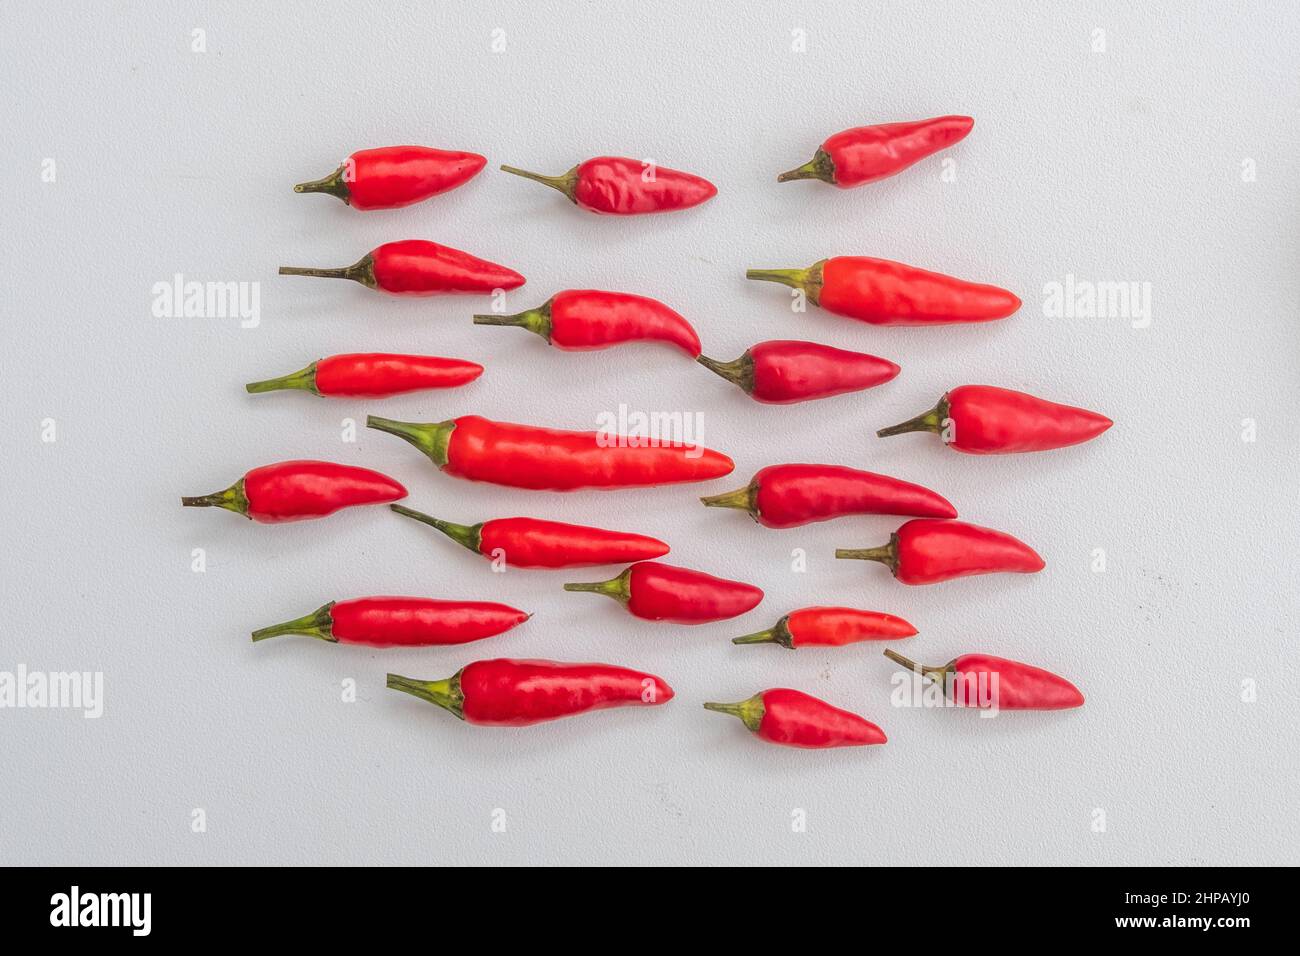 Rote Chilis auf weißem Hintergrund. Chilischoten sind auch als chile, chilischote, Chilischote oder Chili bekannt. Der botanische Name ist Capsicum. Stockfoto